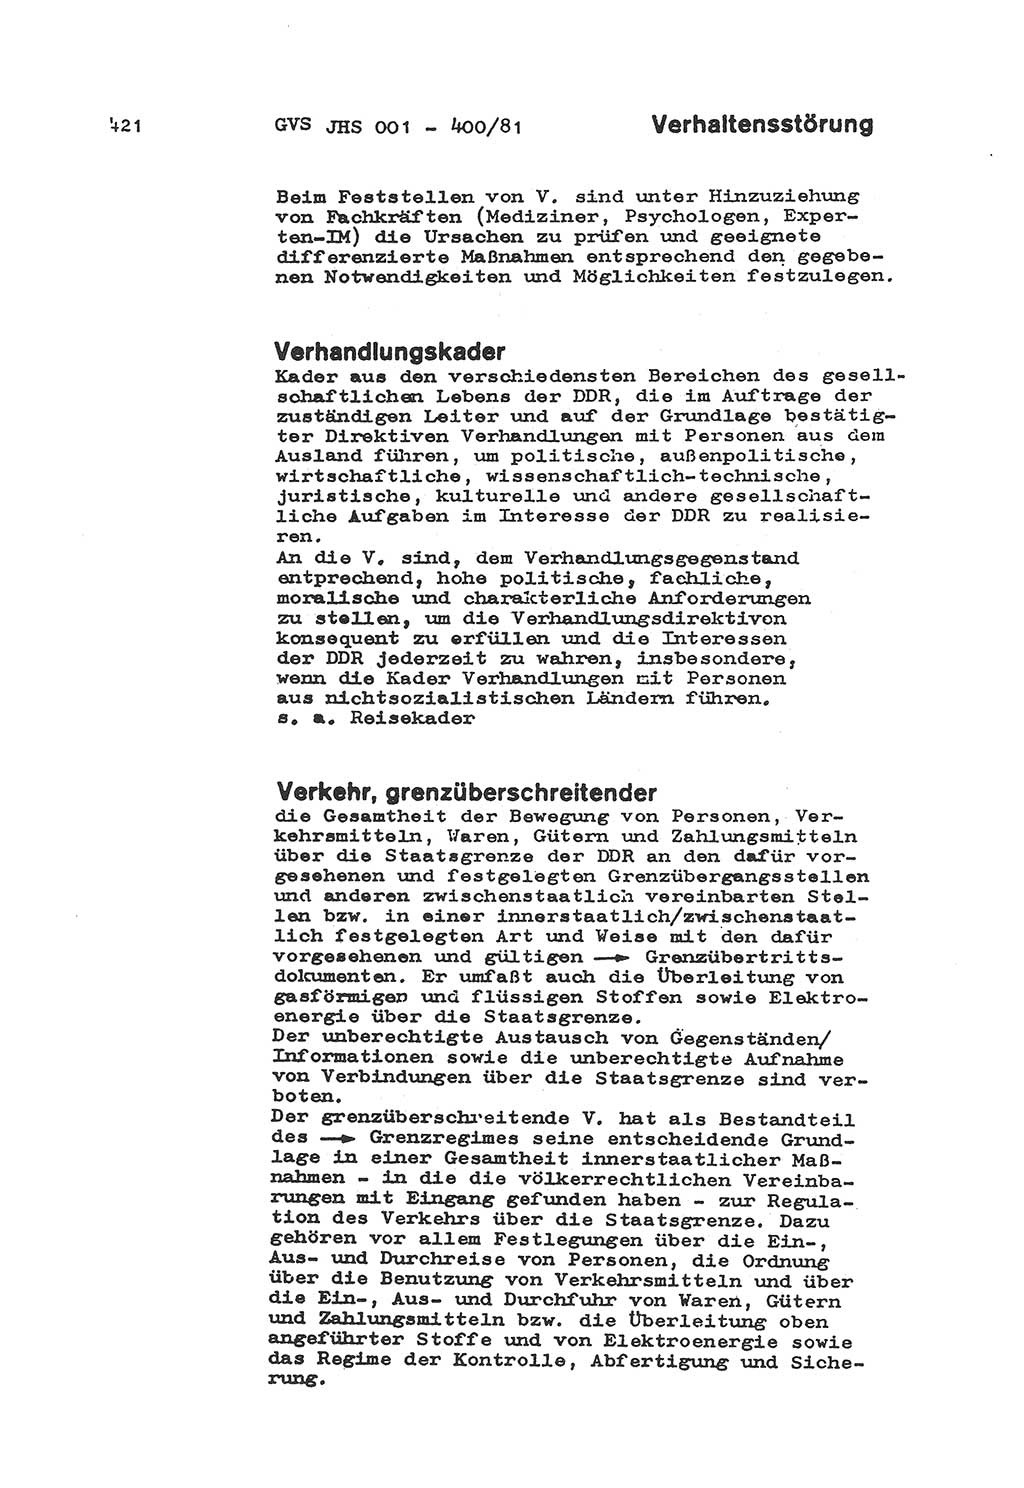 Wörterbuch der politisch-operativen Arbeit, Ministerium für Staatssicherheit (MfS) [Deutsche Demokratische Republik (DDR)], Juristische Hochschule (JHS), Geheime Verschlußsache (GVS) o001-400/81, Potsdam 1985, Blatt 421 (Wb. pol.-op. Arb. MfS DDR JHS GVS o001-400/81 1985, Bl. 421)